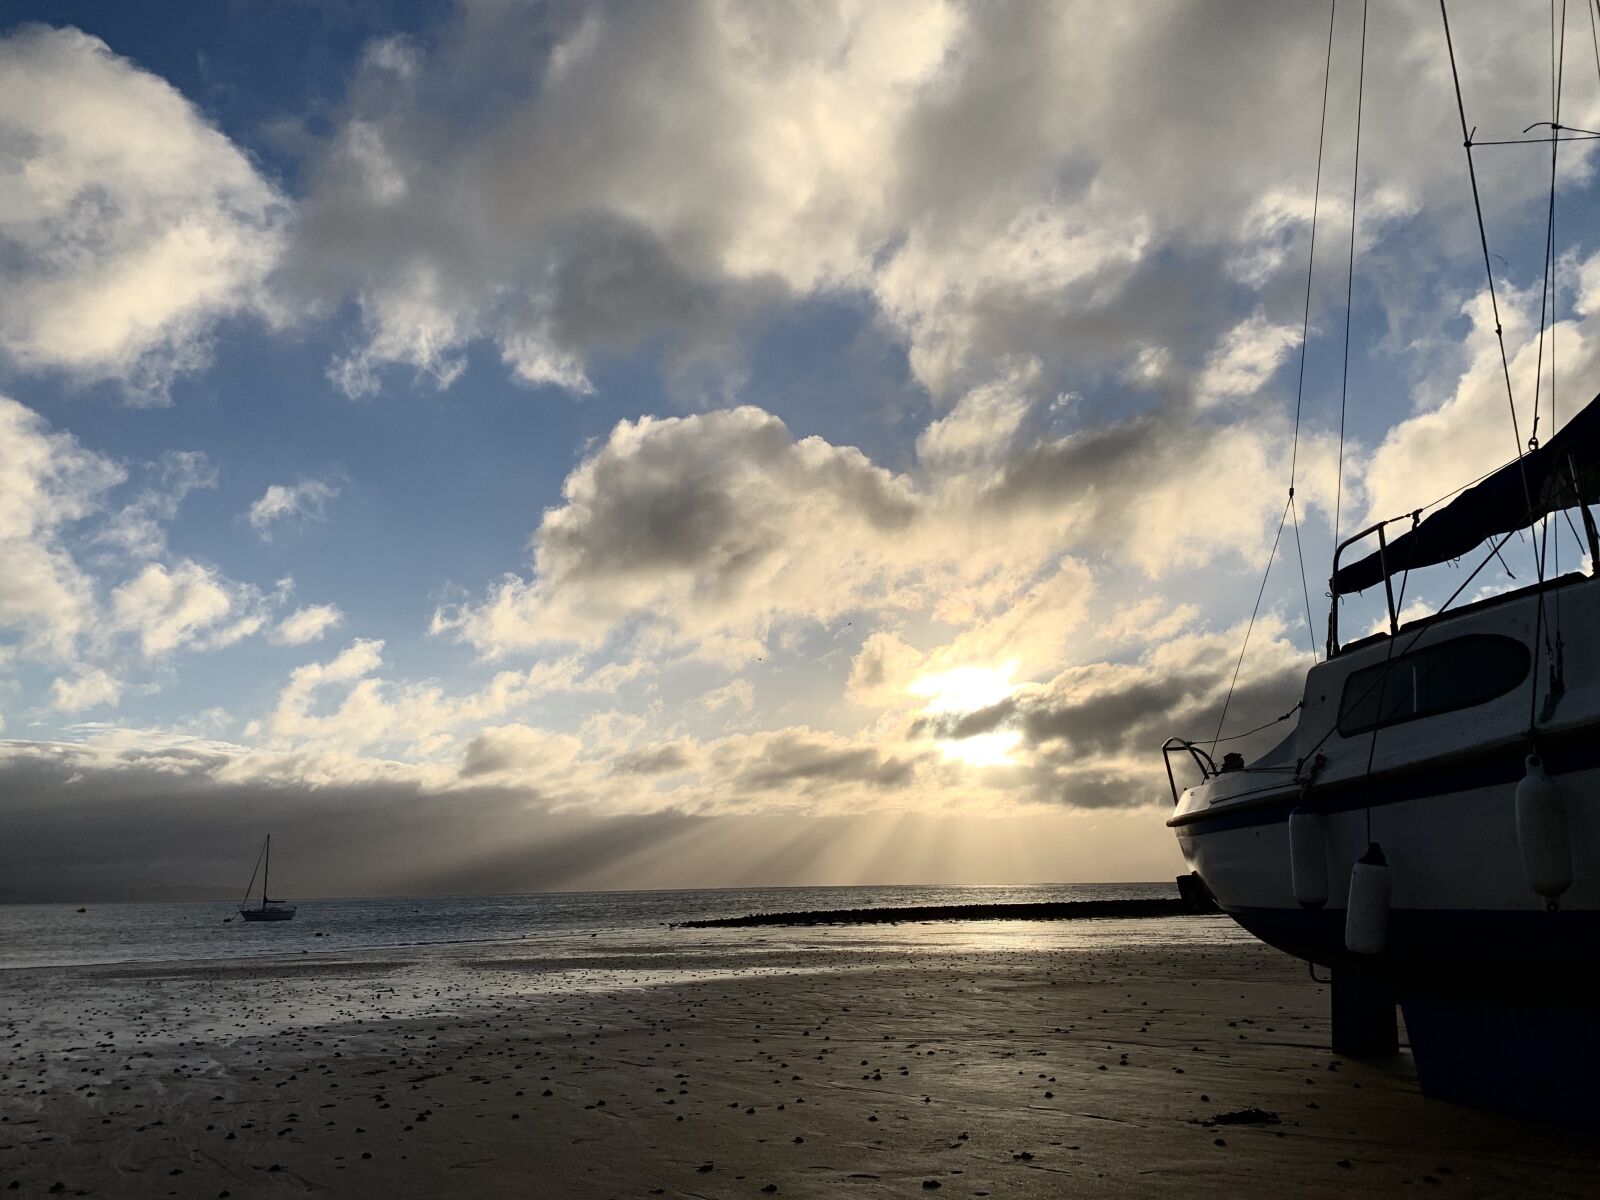 Apple iPhone XS sample photo. Boat, yacht, sunrise photography